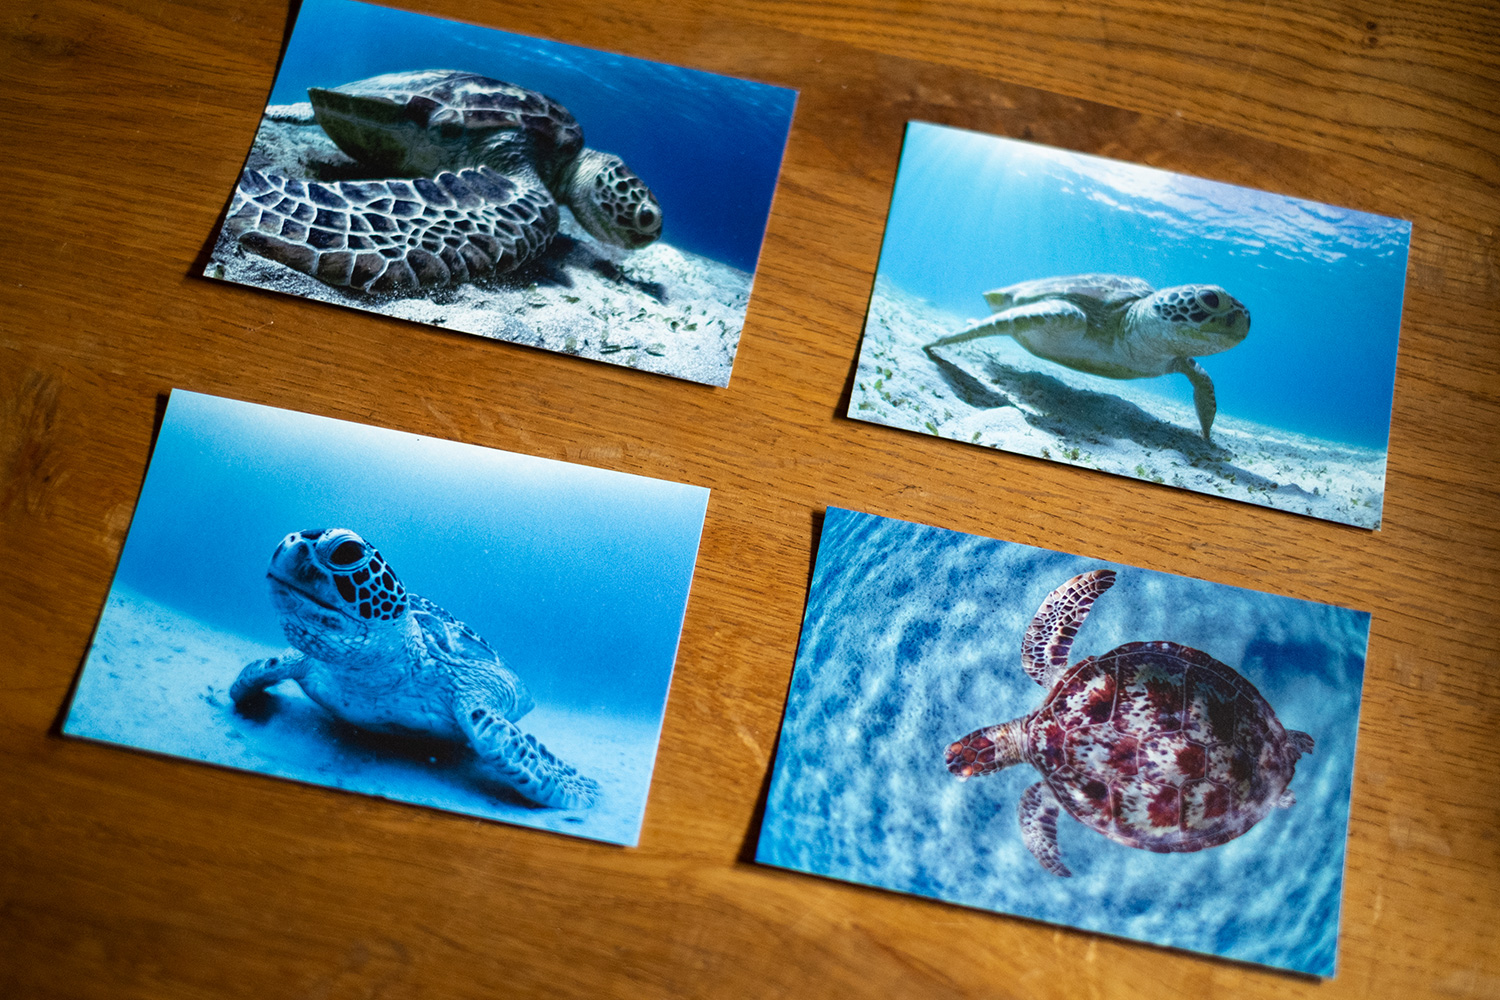 加計呂麻島アオウミガメのポストカード発売